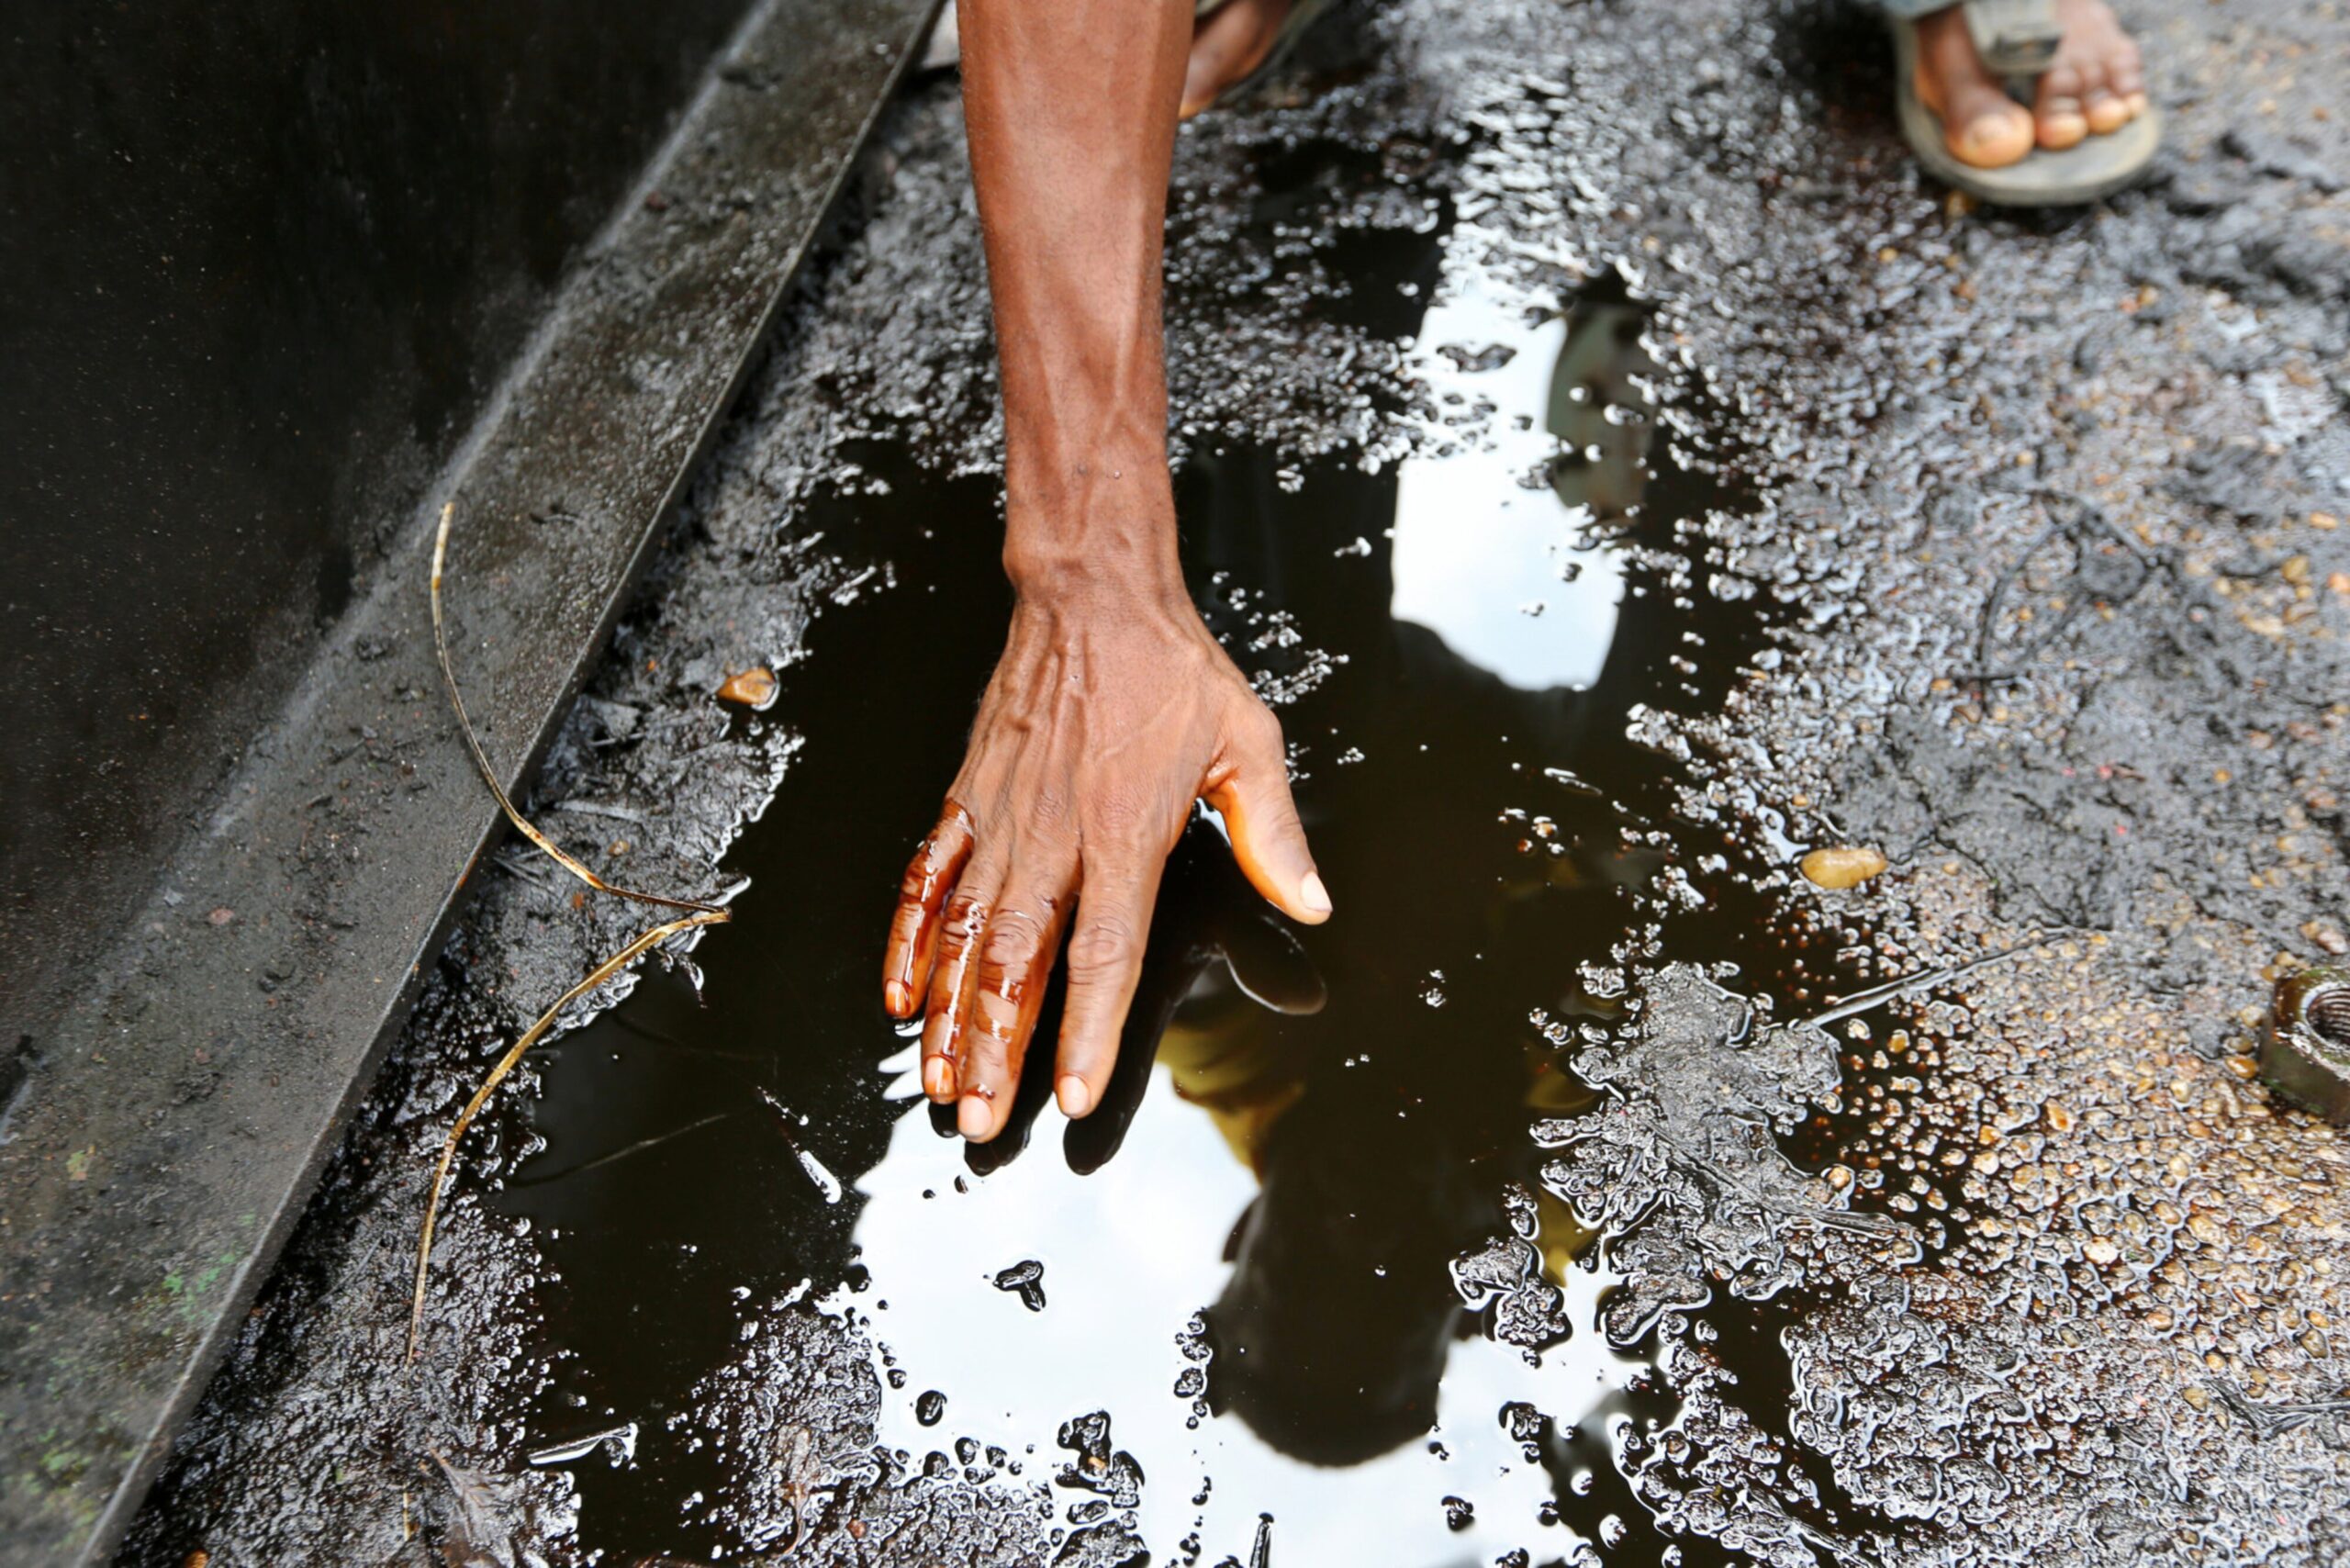 Oil Majors Should Pay $12B to Repair Damage in Nigeria: Report